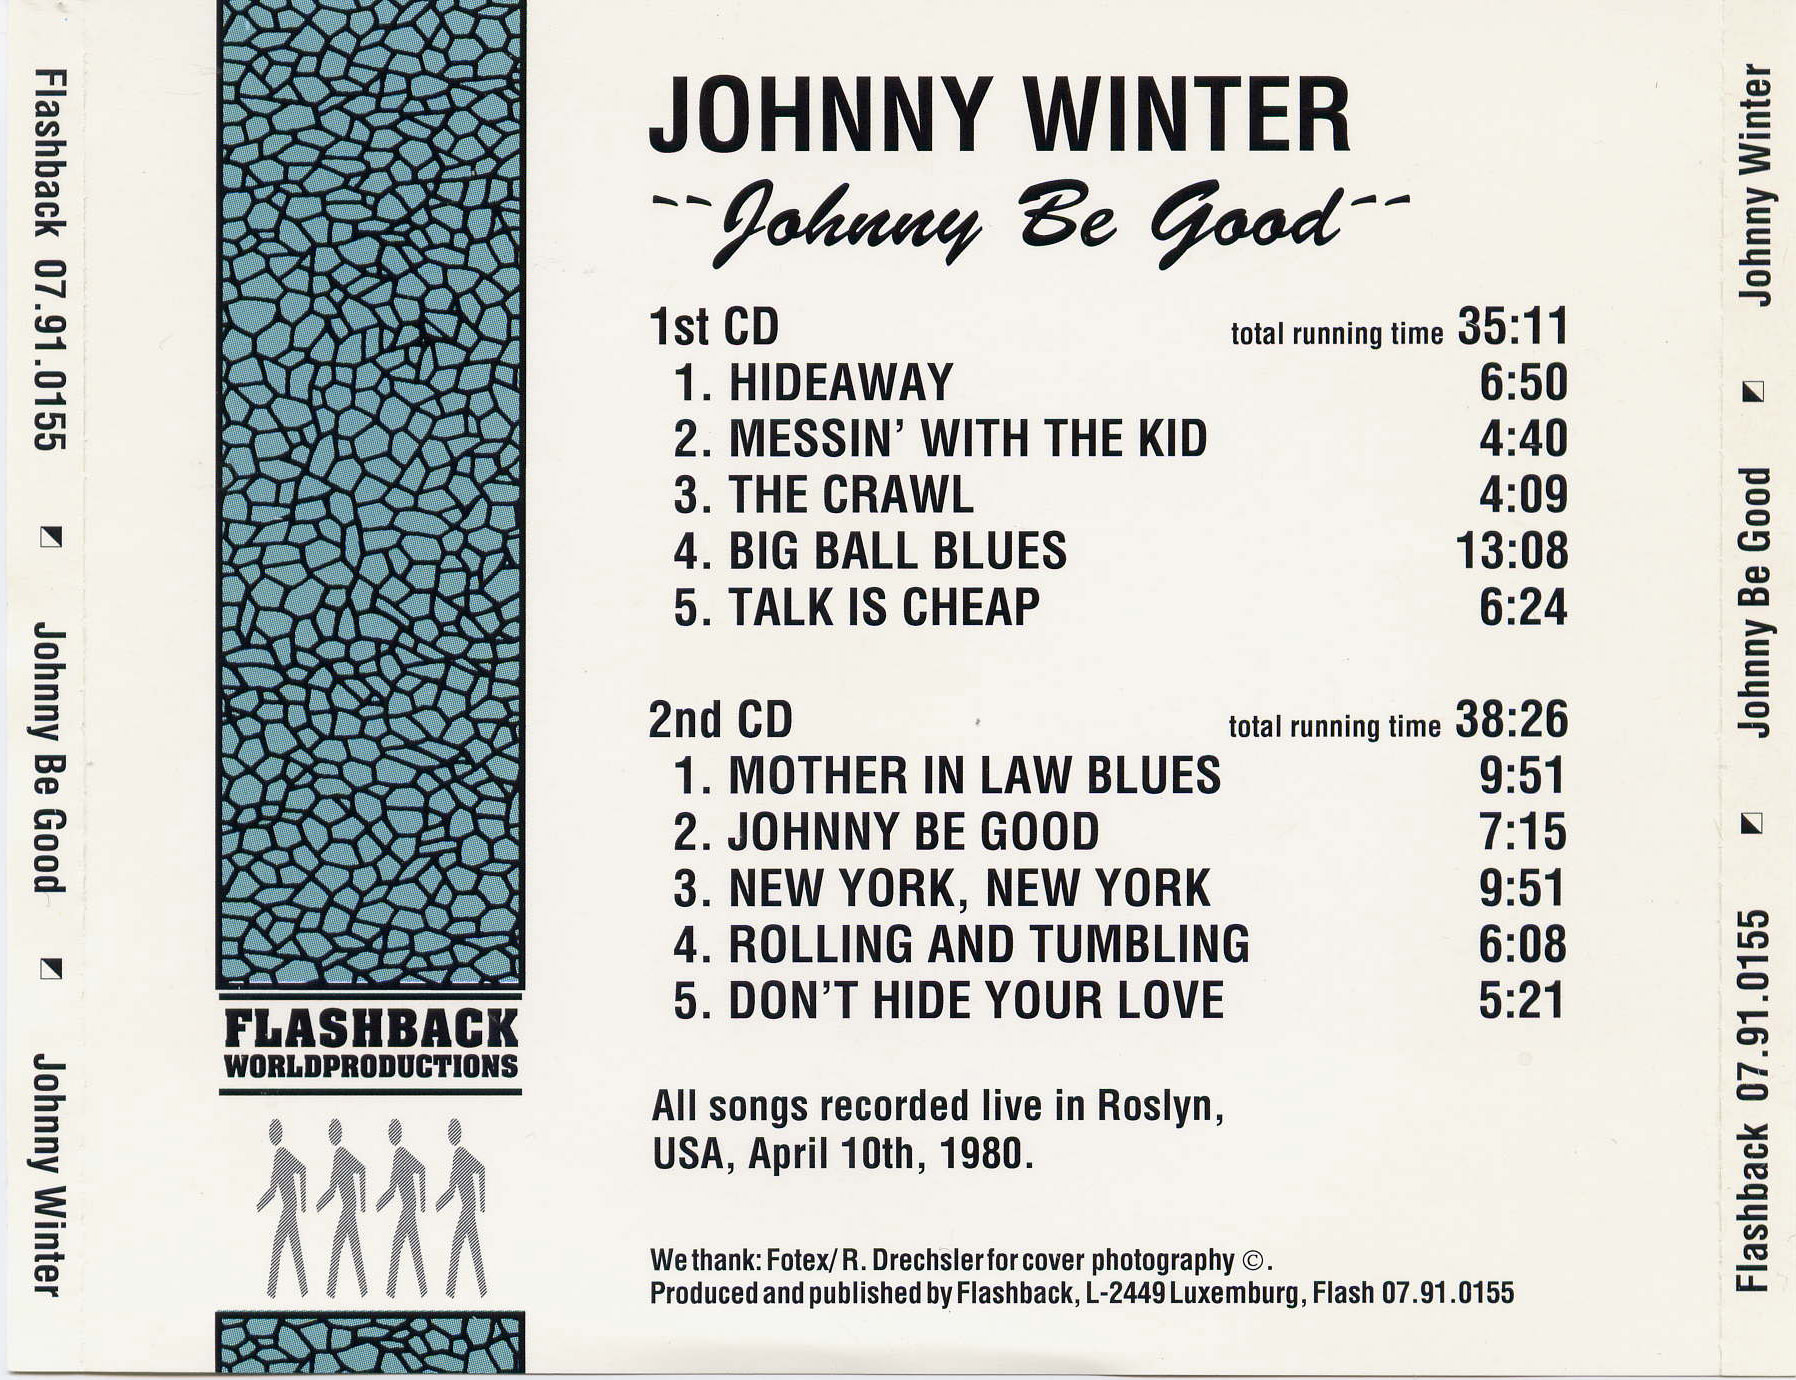 JohnnyWinter1980-04-10MyFathersPlaceRoslynNY (1).jpg